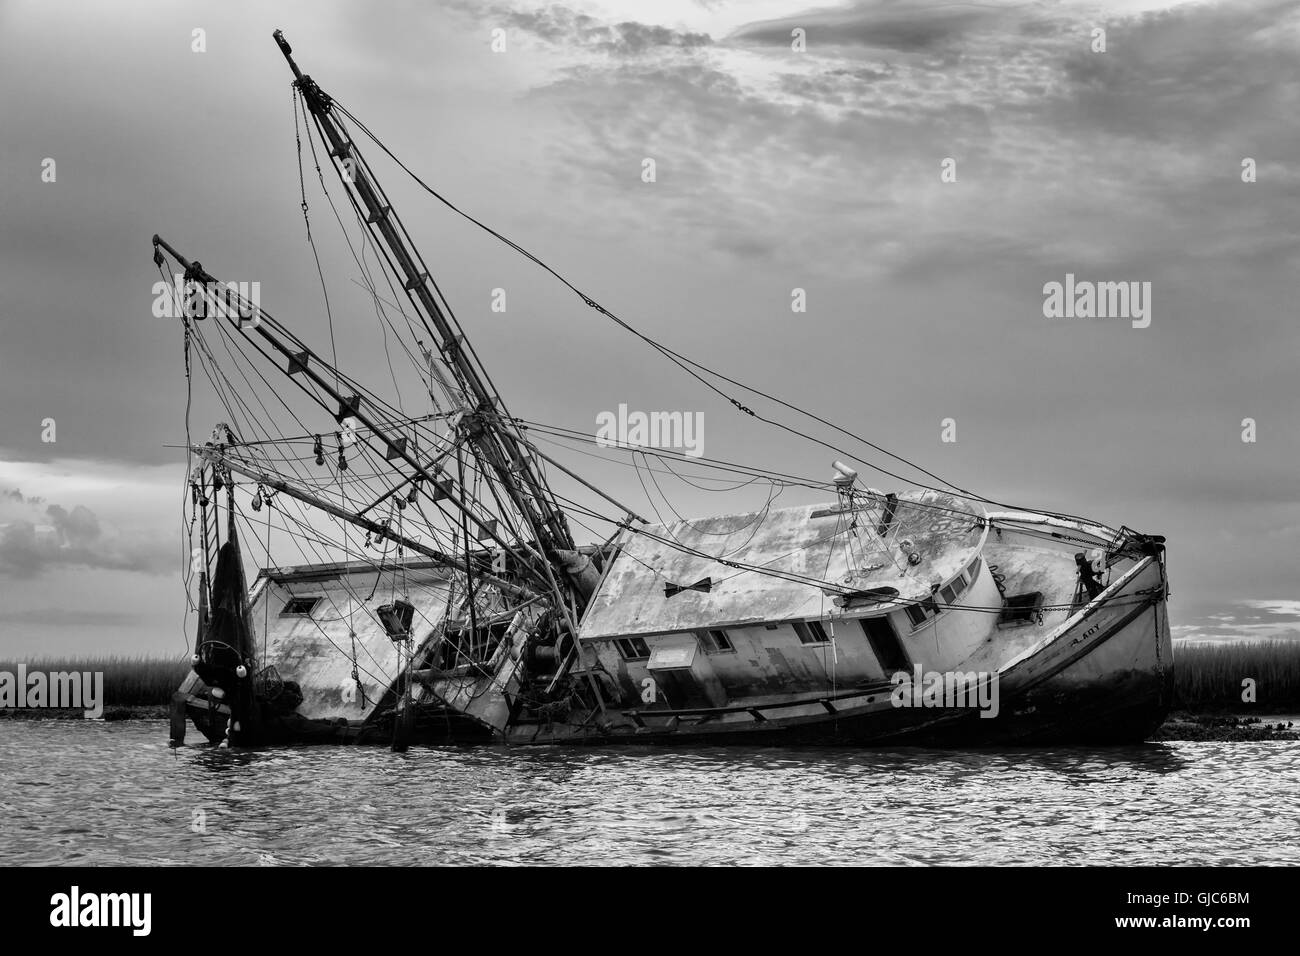 La dame Sassy, une épave de bateau, juste à côté de la crevette, Amelia Island, Floride Banque D'Images